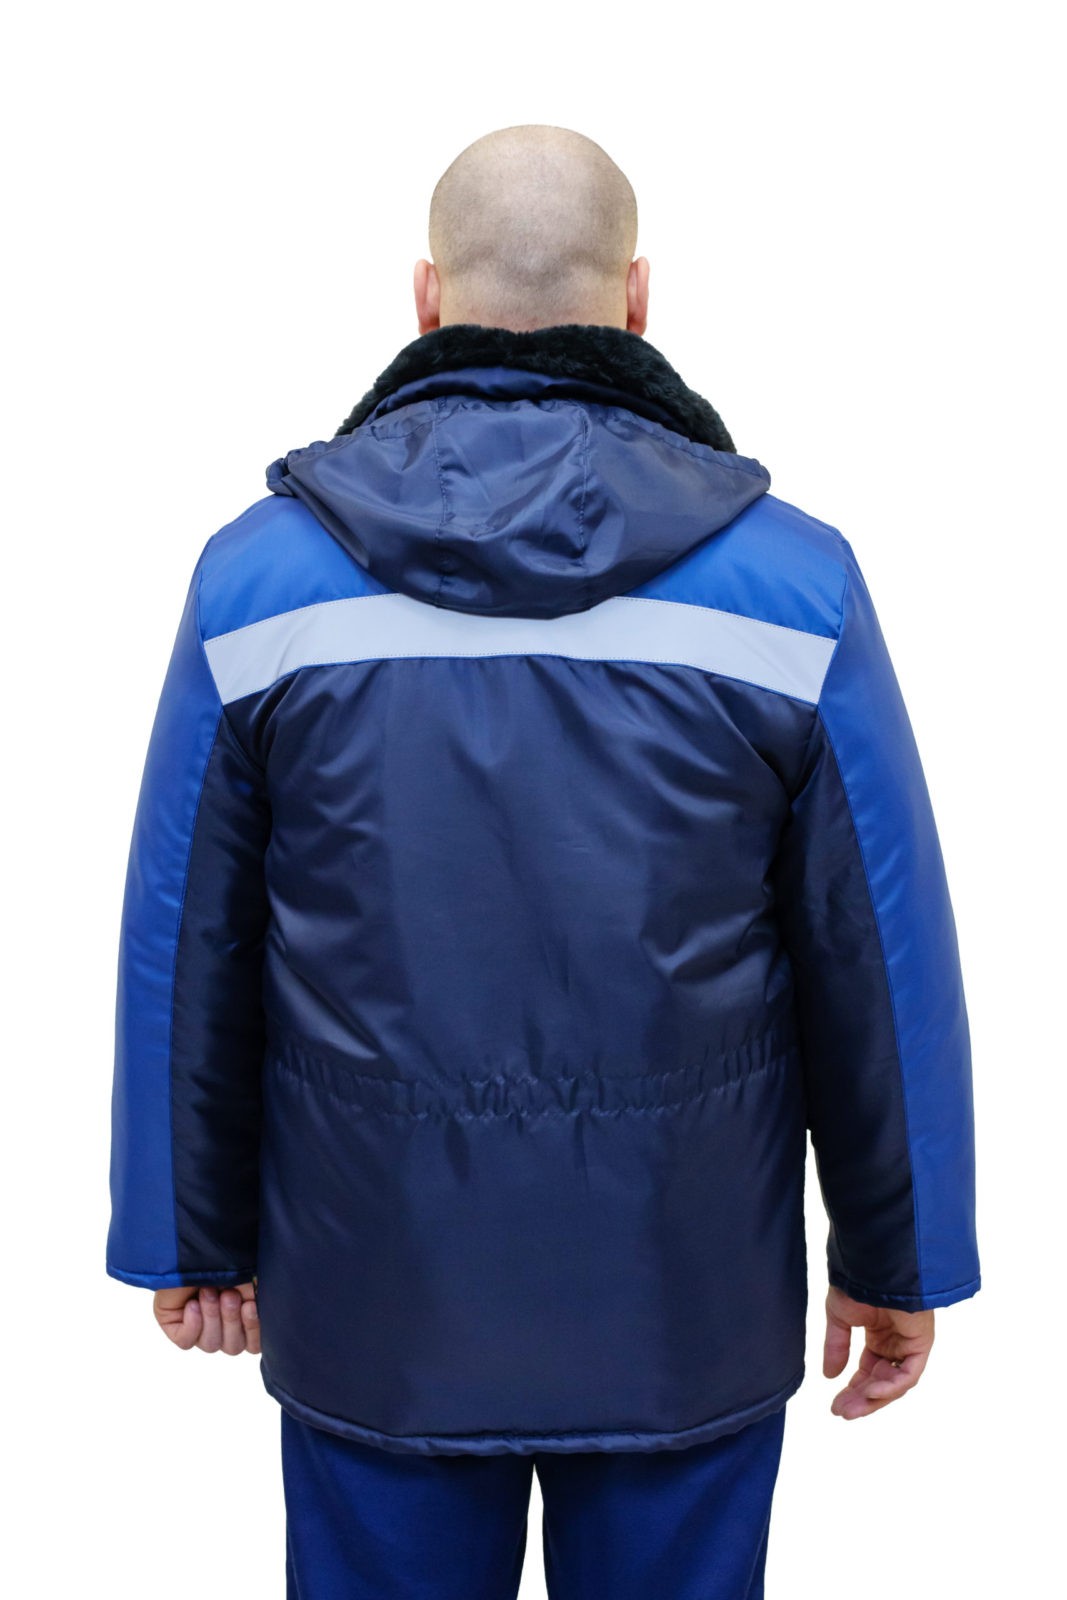 Куртка №304 СОП (синий) для защиты от пониженных температур